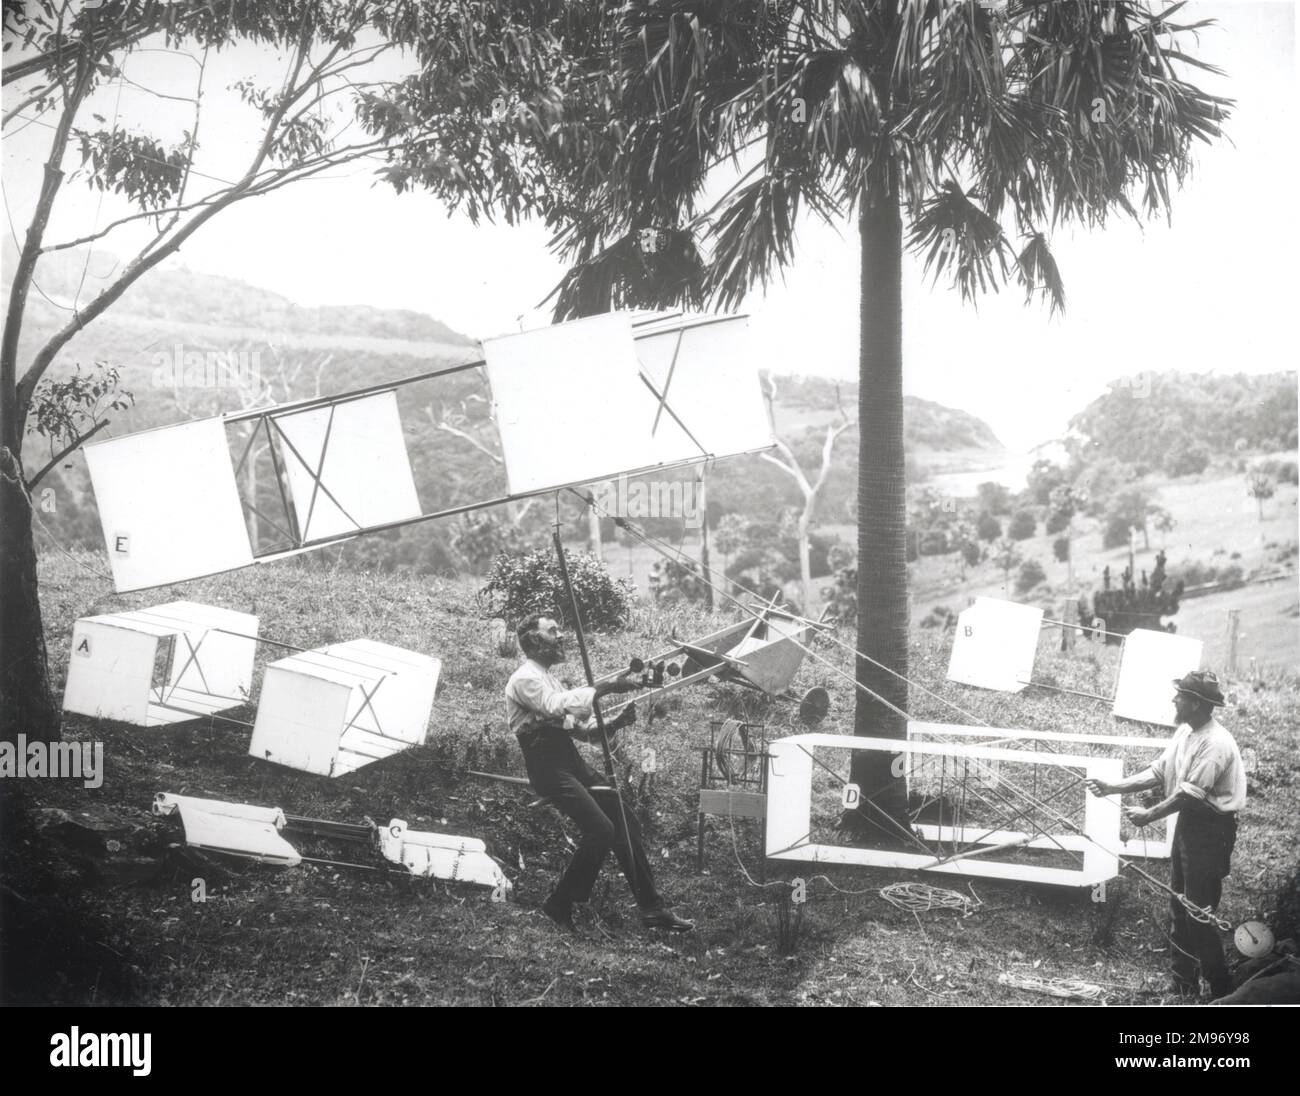 Lawrence Hargrave et James Swaine expérimentent avec quatre cerfs-volants de levage, basés sur l’invention de Hargrave de la structure en boîte-cerf-volant. Banque D'Images